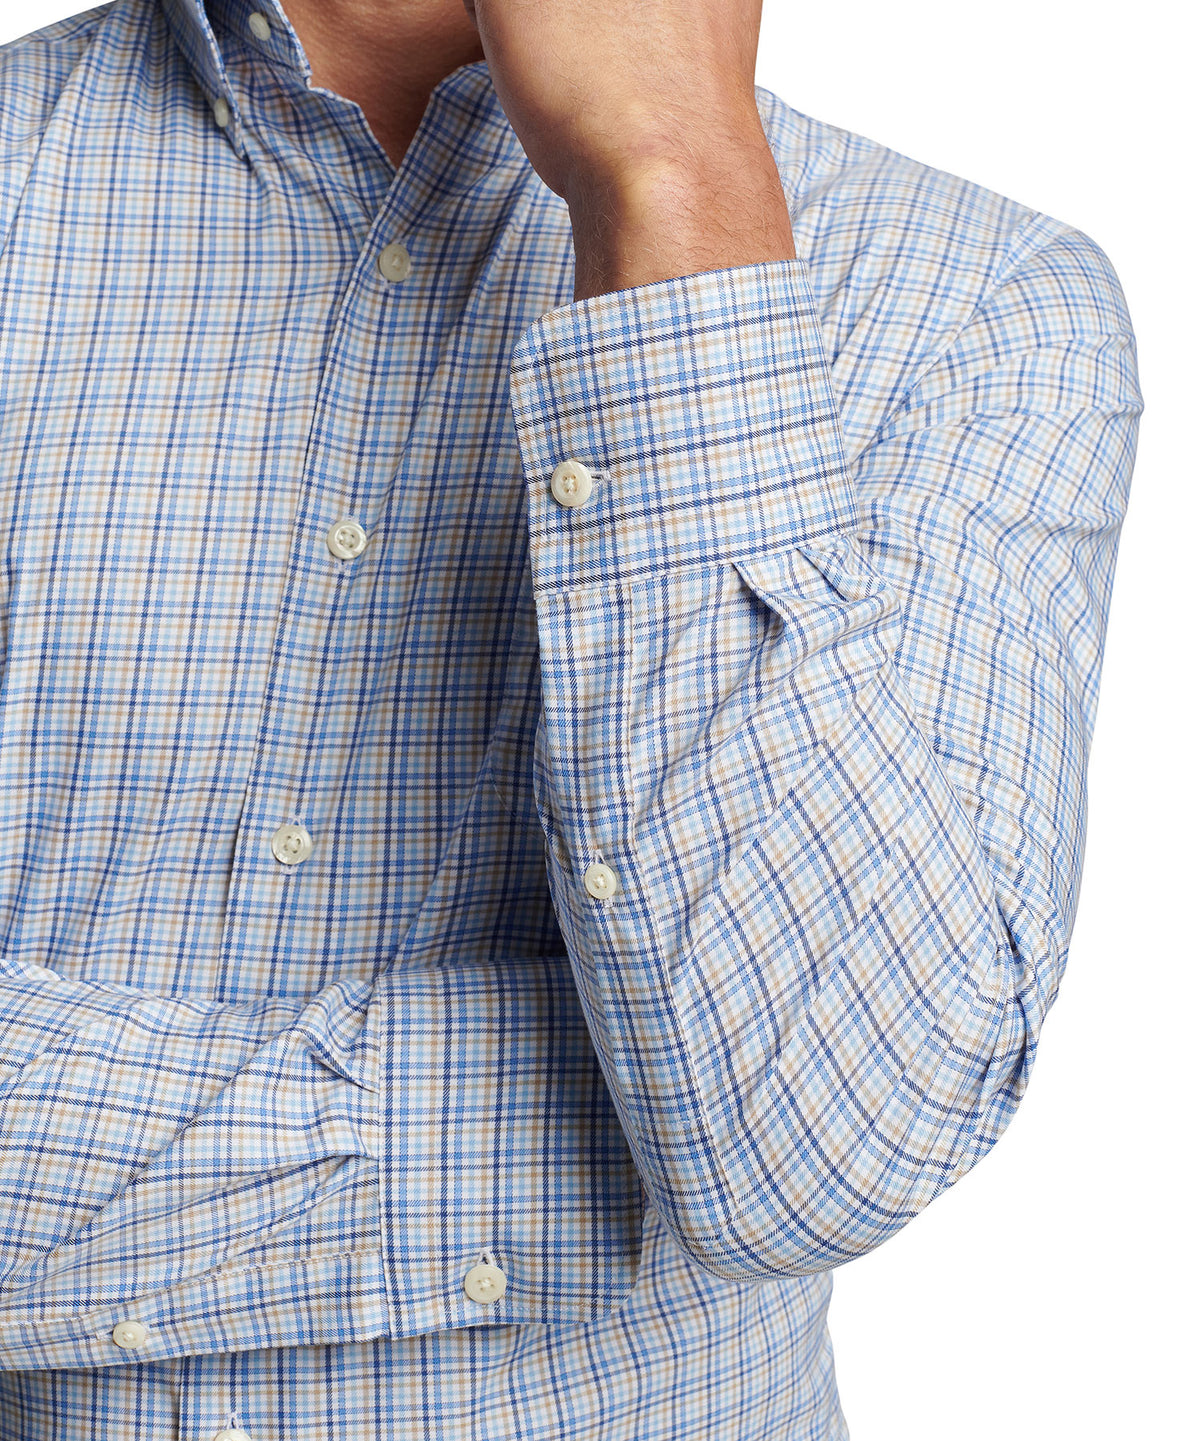 Peter Millar Long Sleeve Cutler Button-Down Collar Patterned Sport Shirt